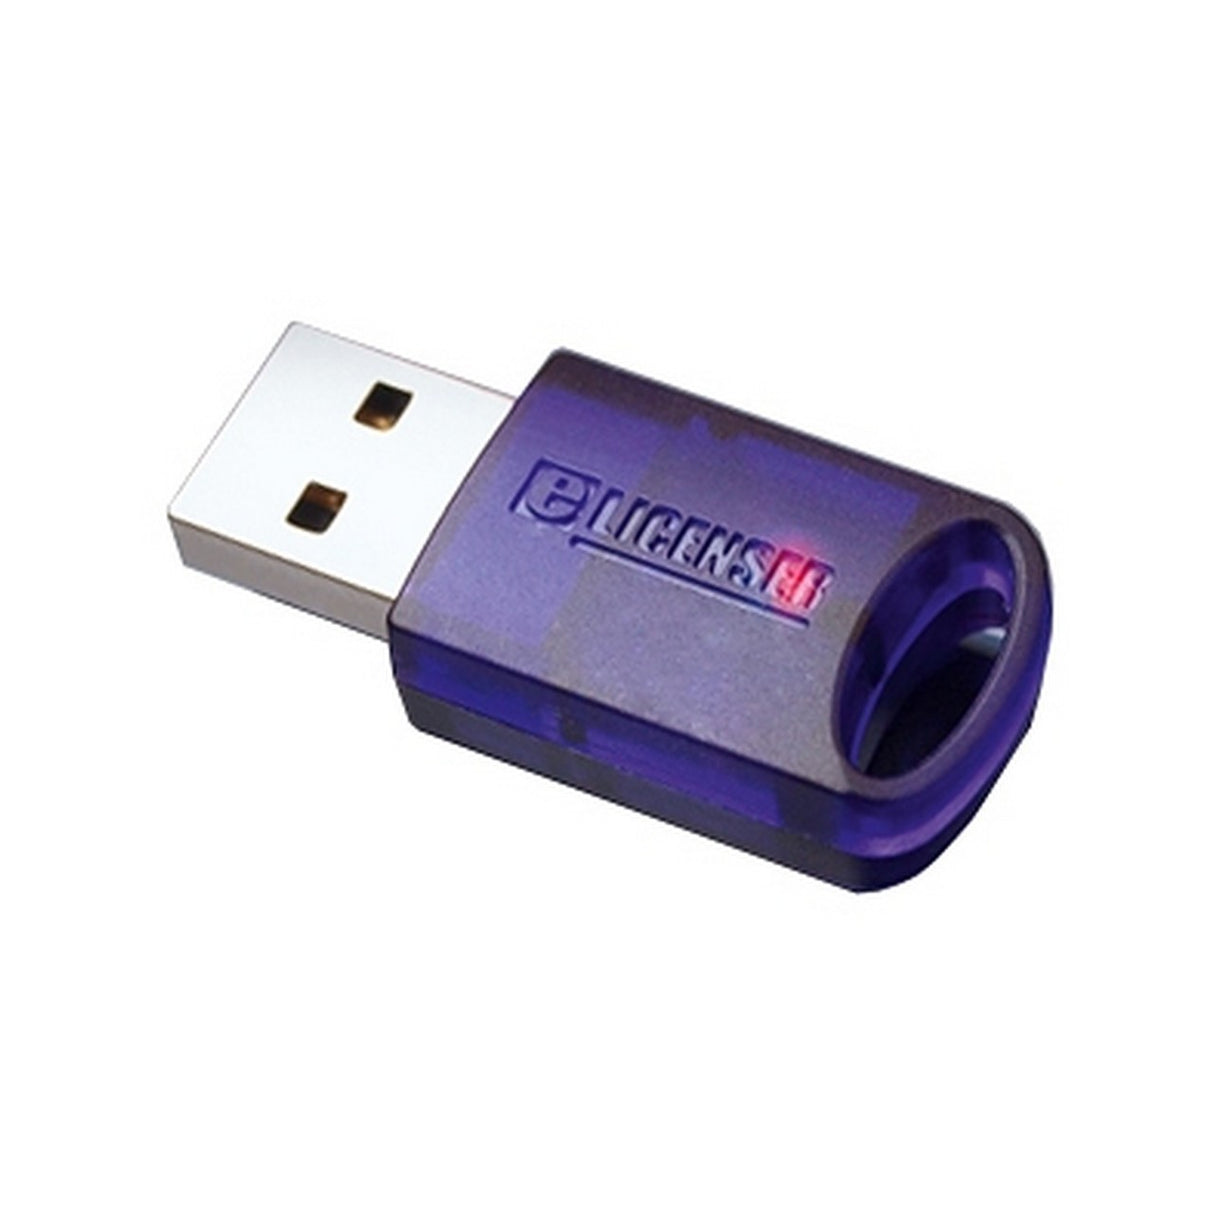 Steinberg eLicenser Key | USB Hardware Key for Steinberg Software